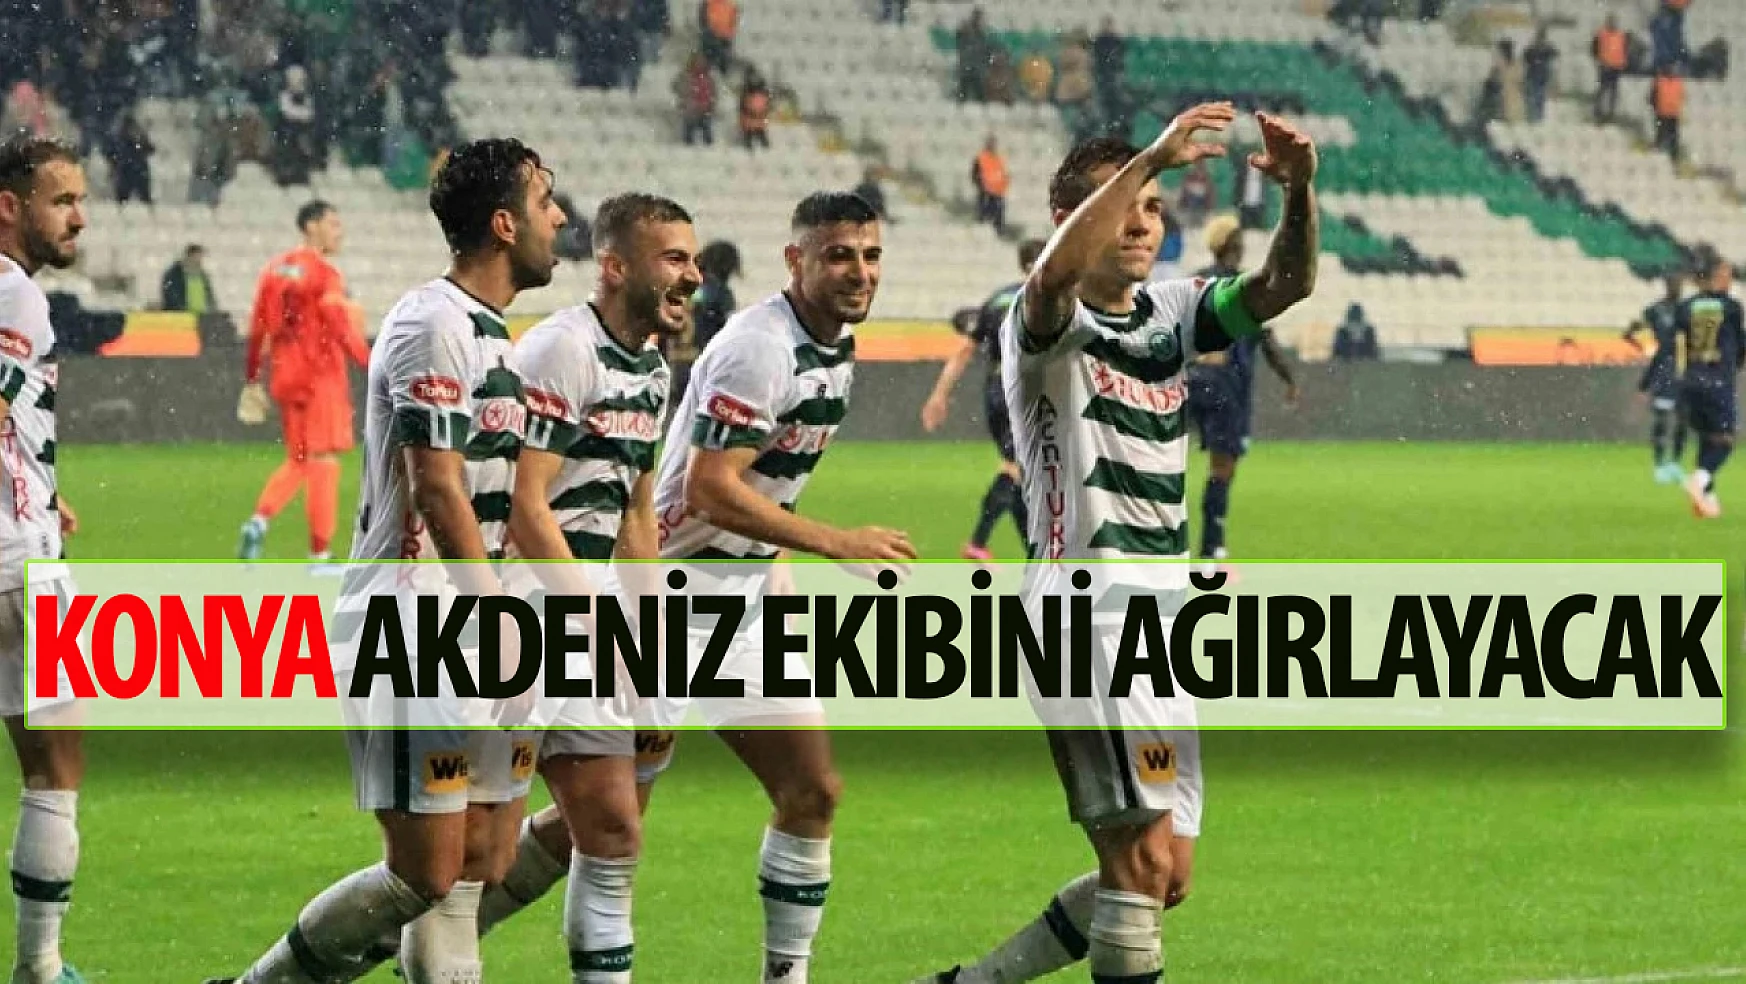 Süper Lig'de 27'inci hafta heyecanı başlıyor: Konyaspor evinde Akdeniz ekibini ağırlayacak!